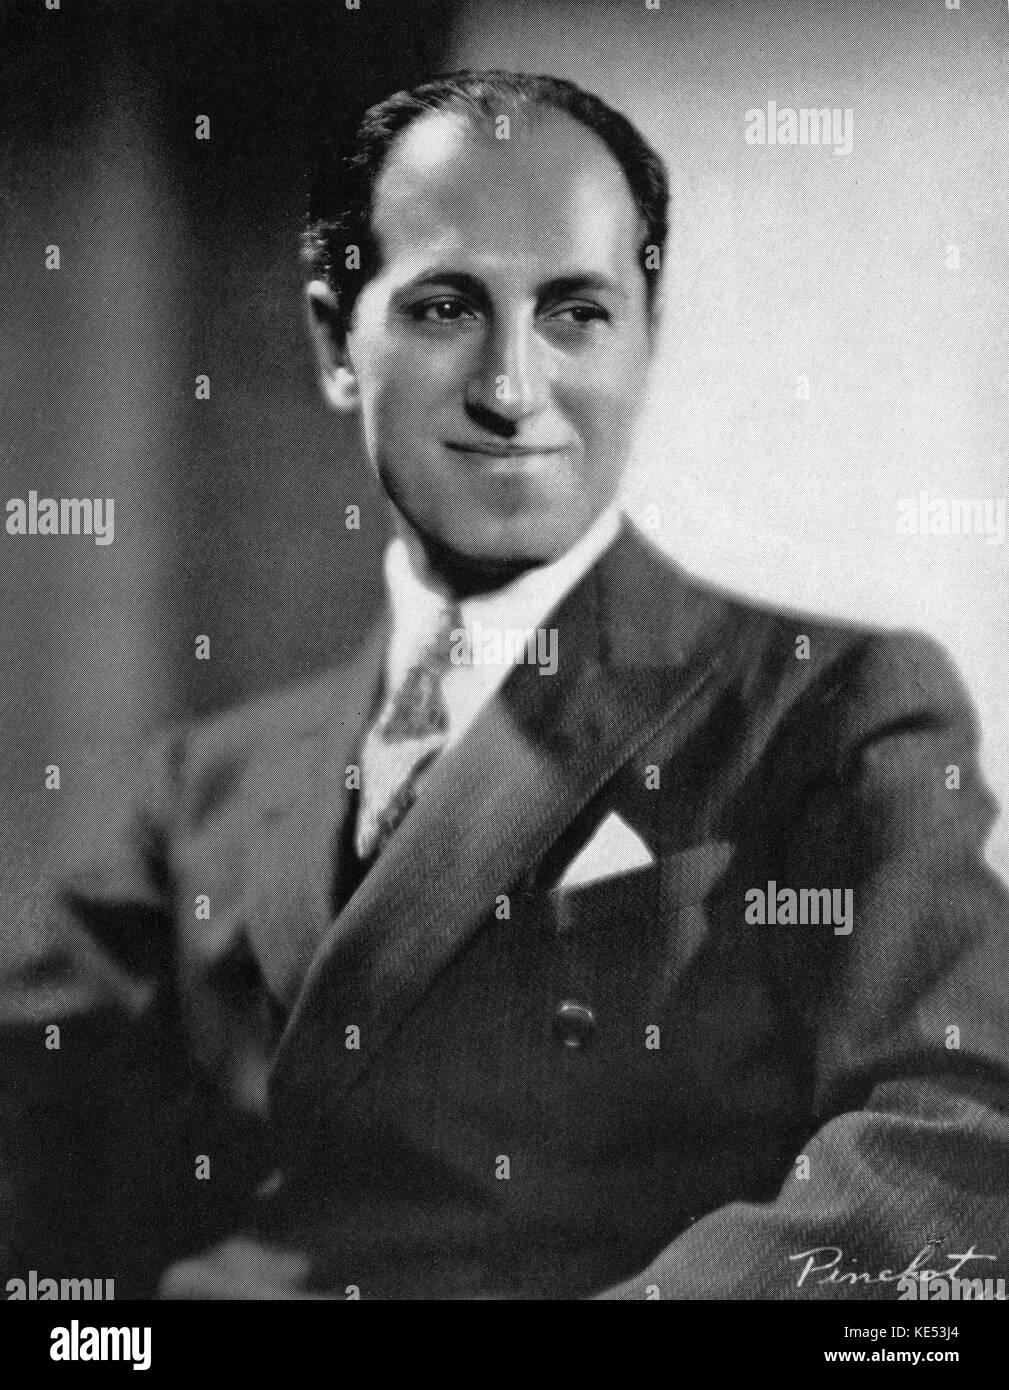 George Gershwin - retrato pianista y compositor norteamericano, el 26 de septiembre de 1898 - 11 de julio de 1937 Foto de stock